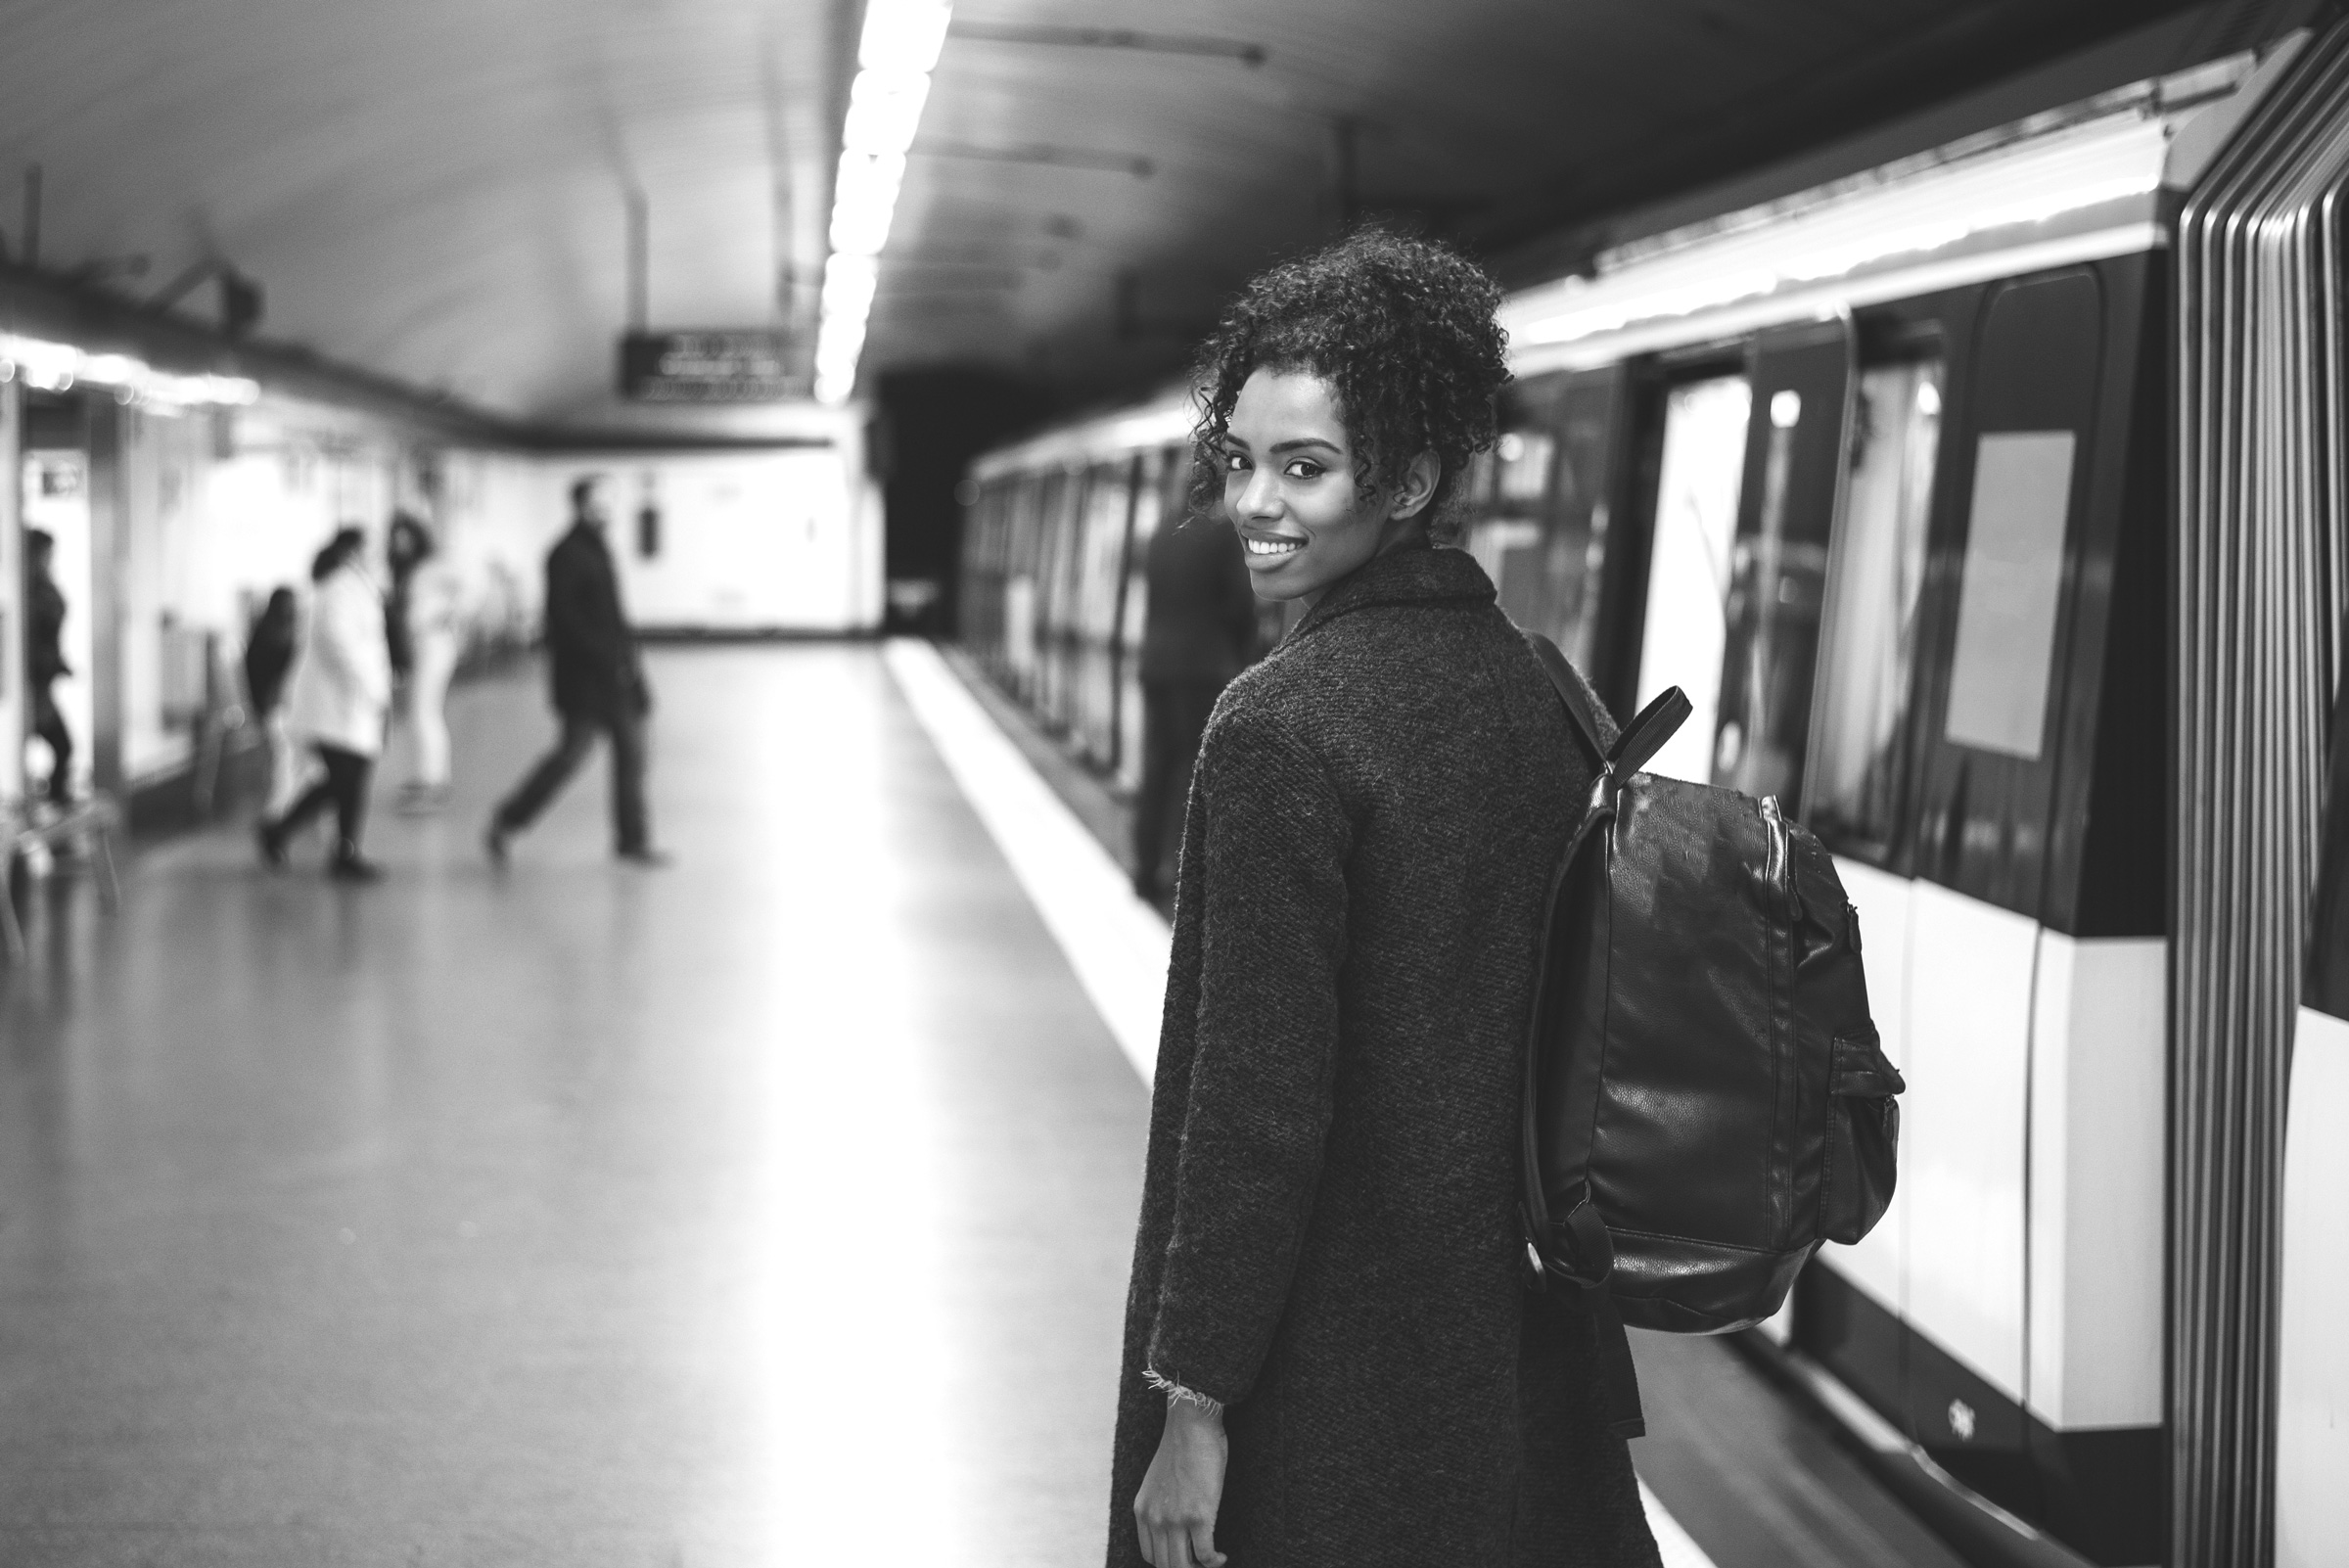 Themenbild: Junge Frau in einem unterirdischen Bahnhof am Gleis, schaut in die Kamera.